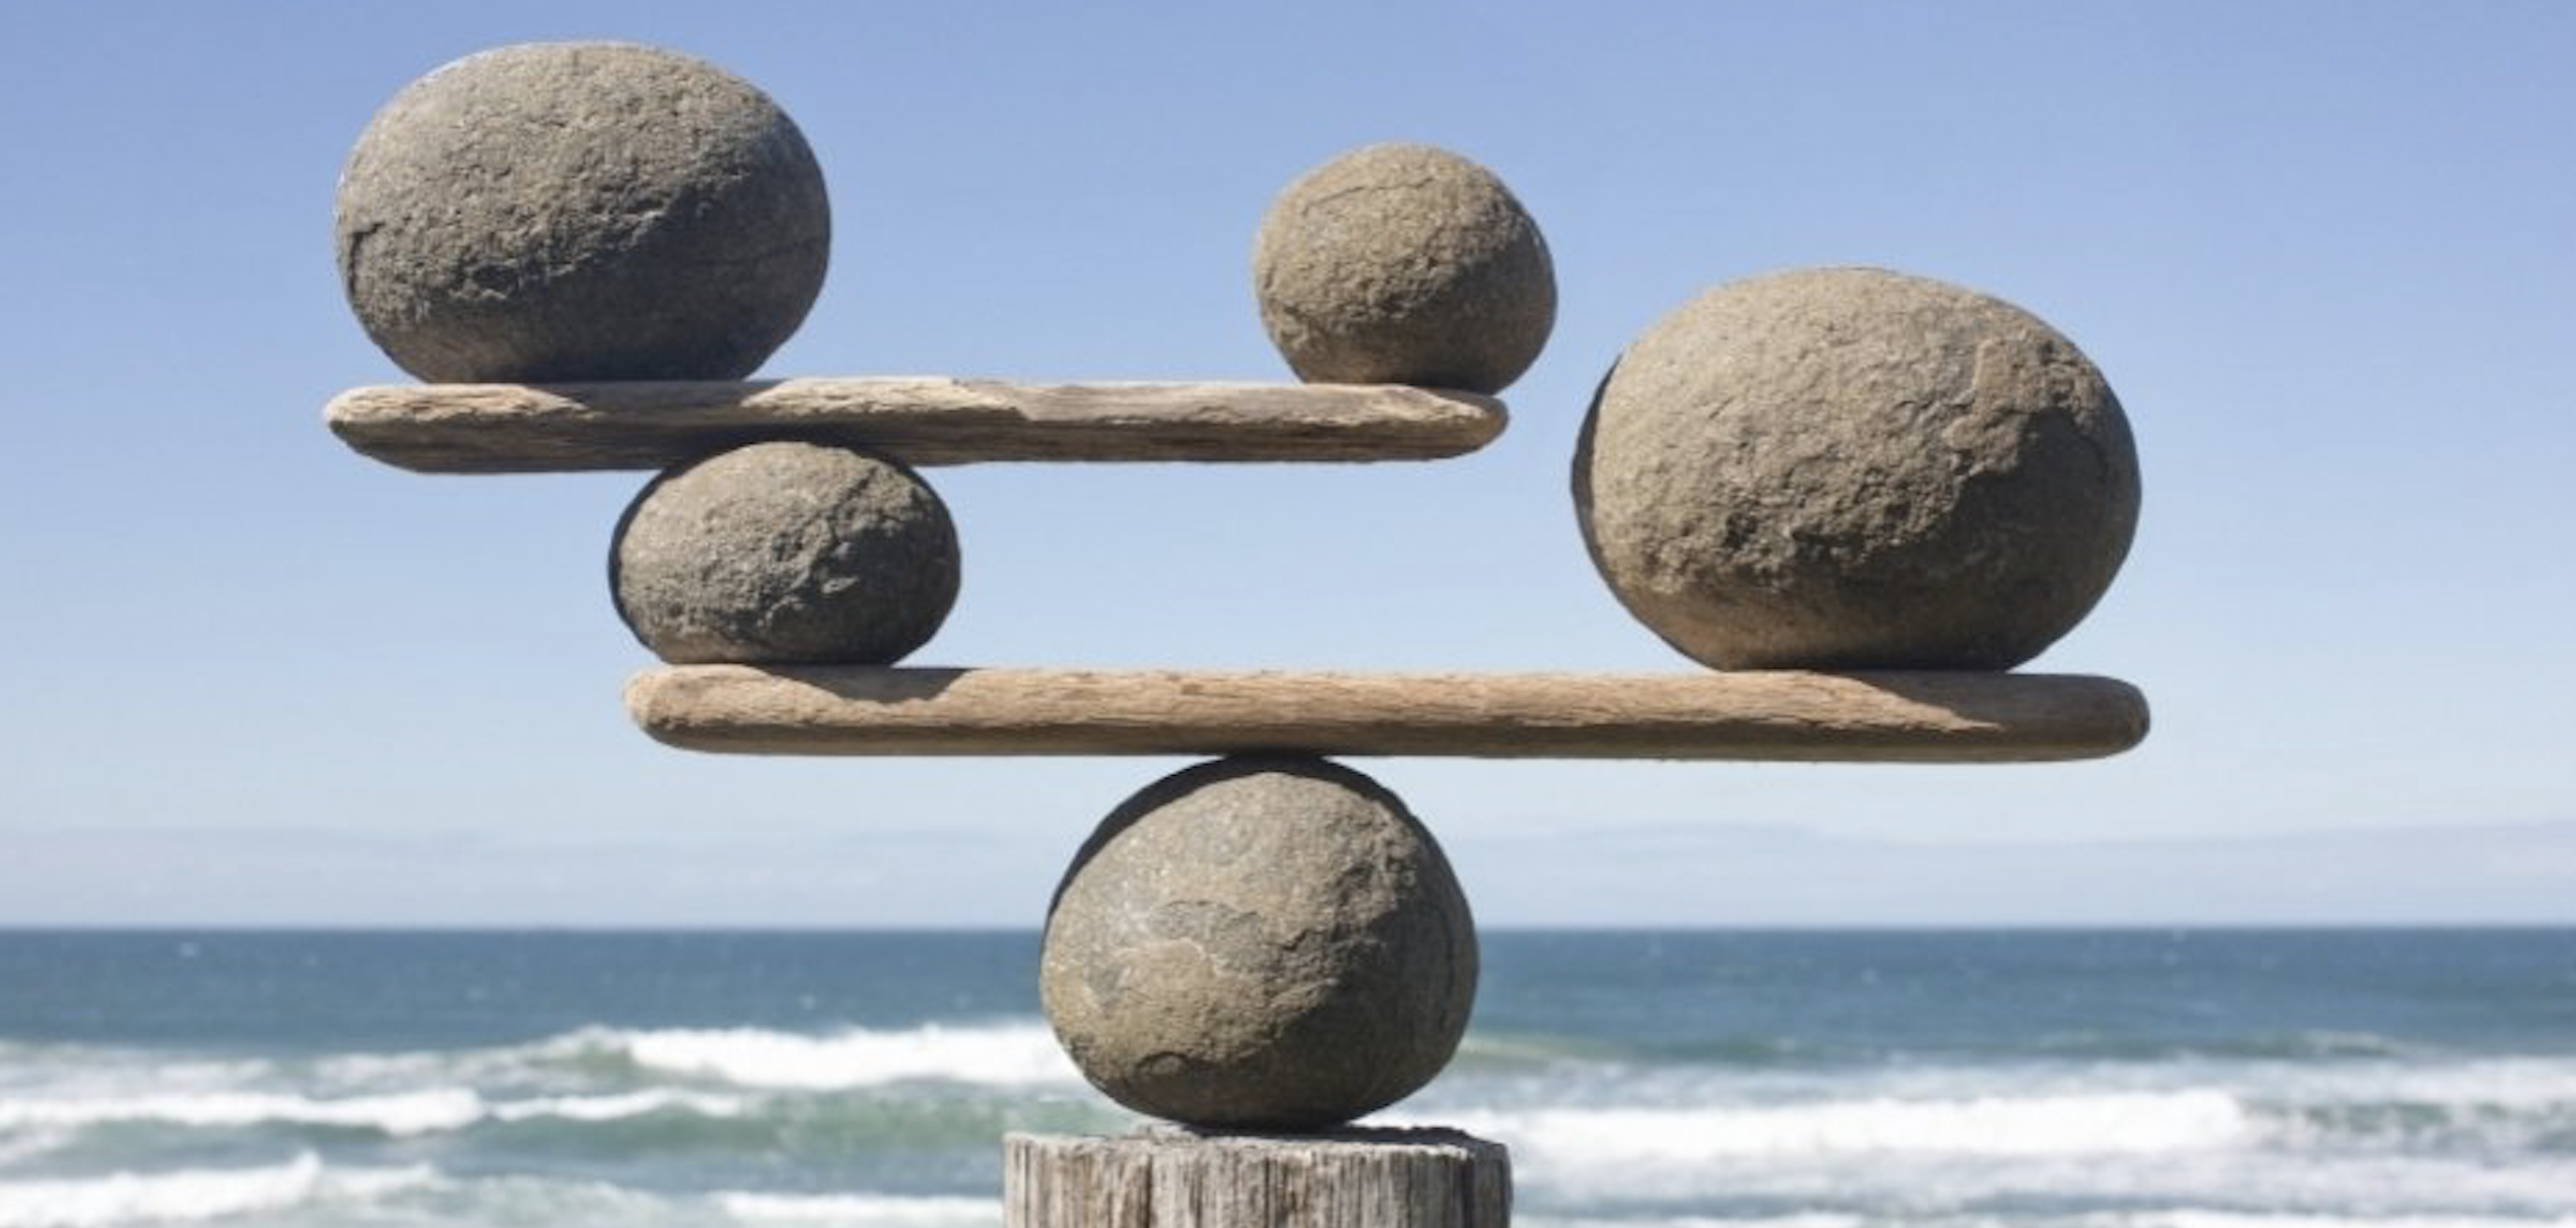 Ощущение равновесие. Камни равновесие. Равновесие в природе. Равновесие жизни. Баланс в природе.